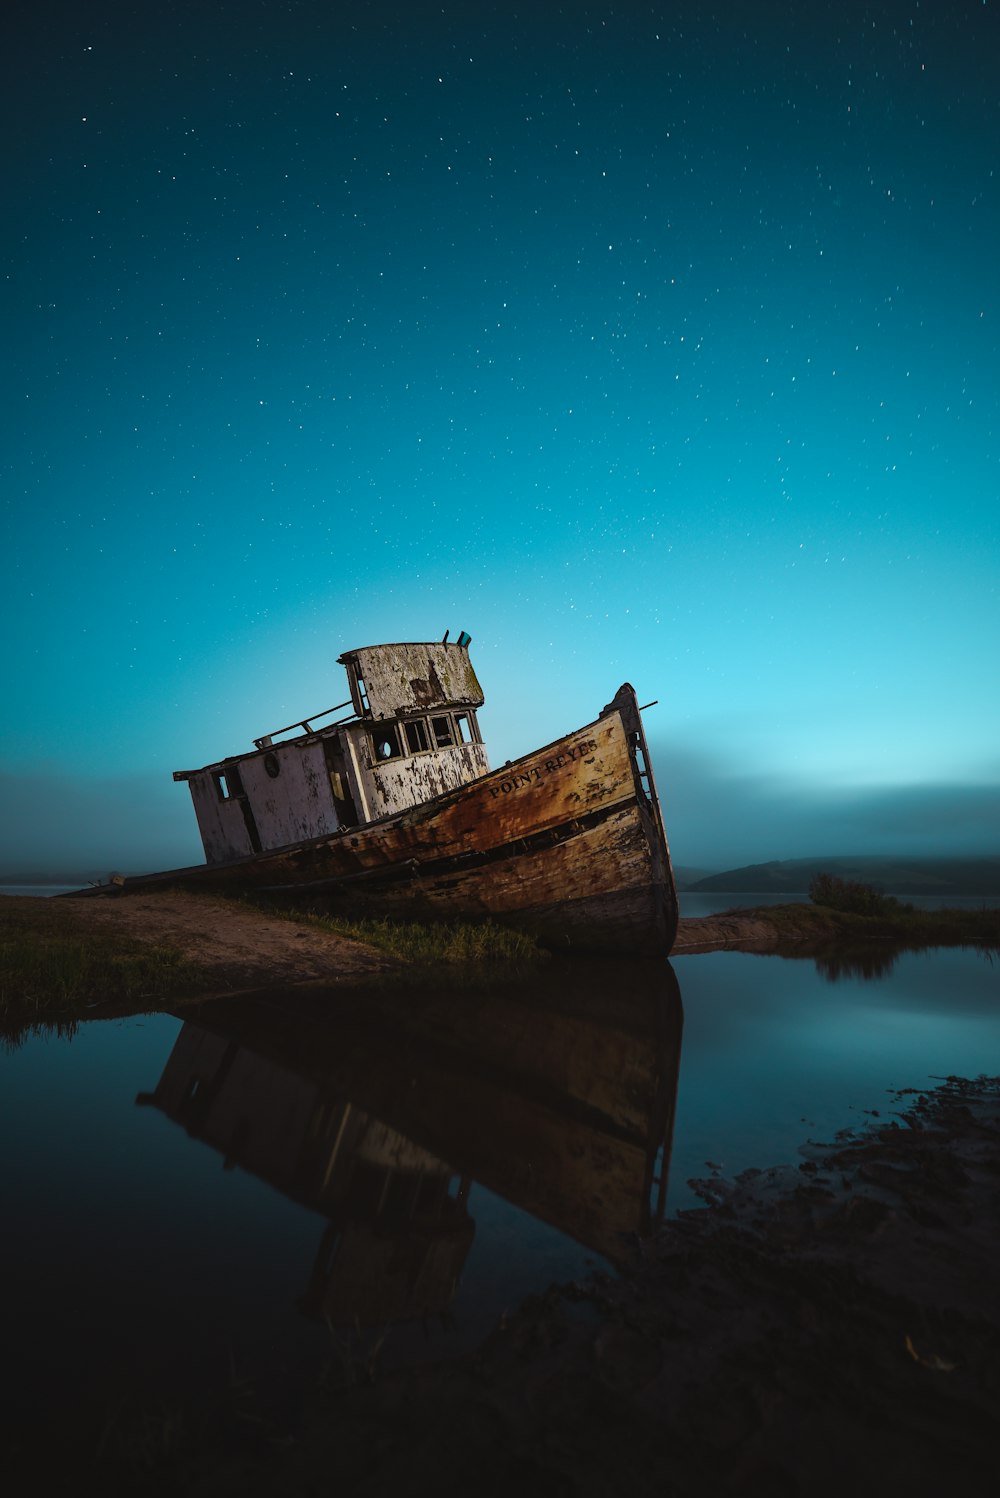 navire abandonné sur le bord de la mer sous le ciel avec des étoiles